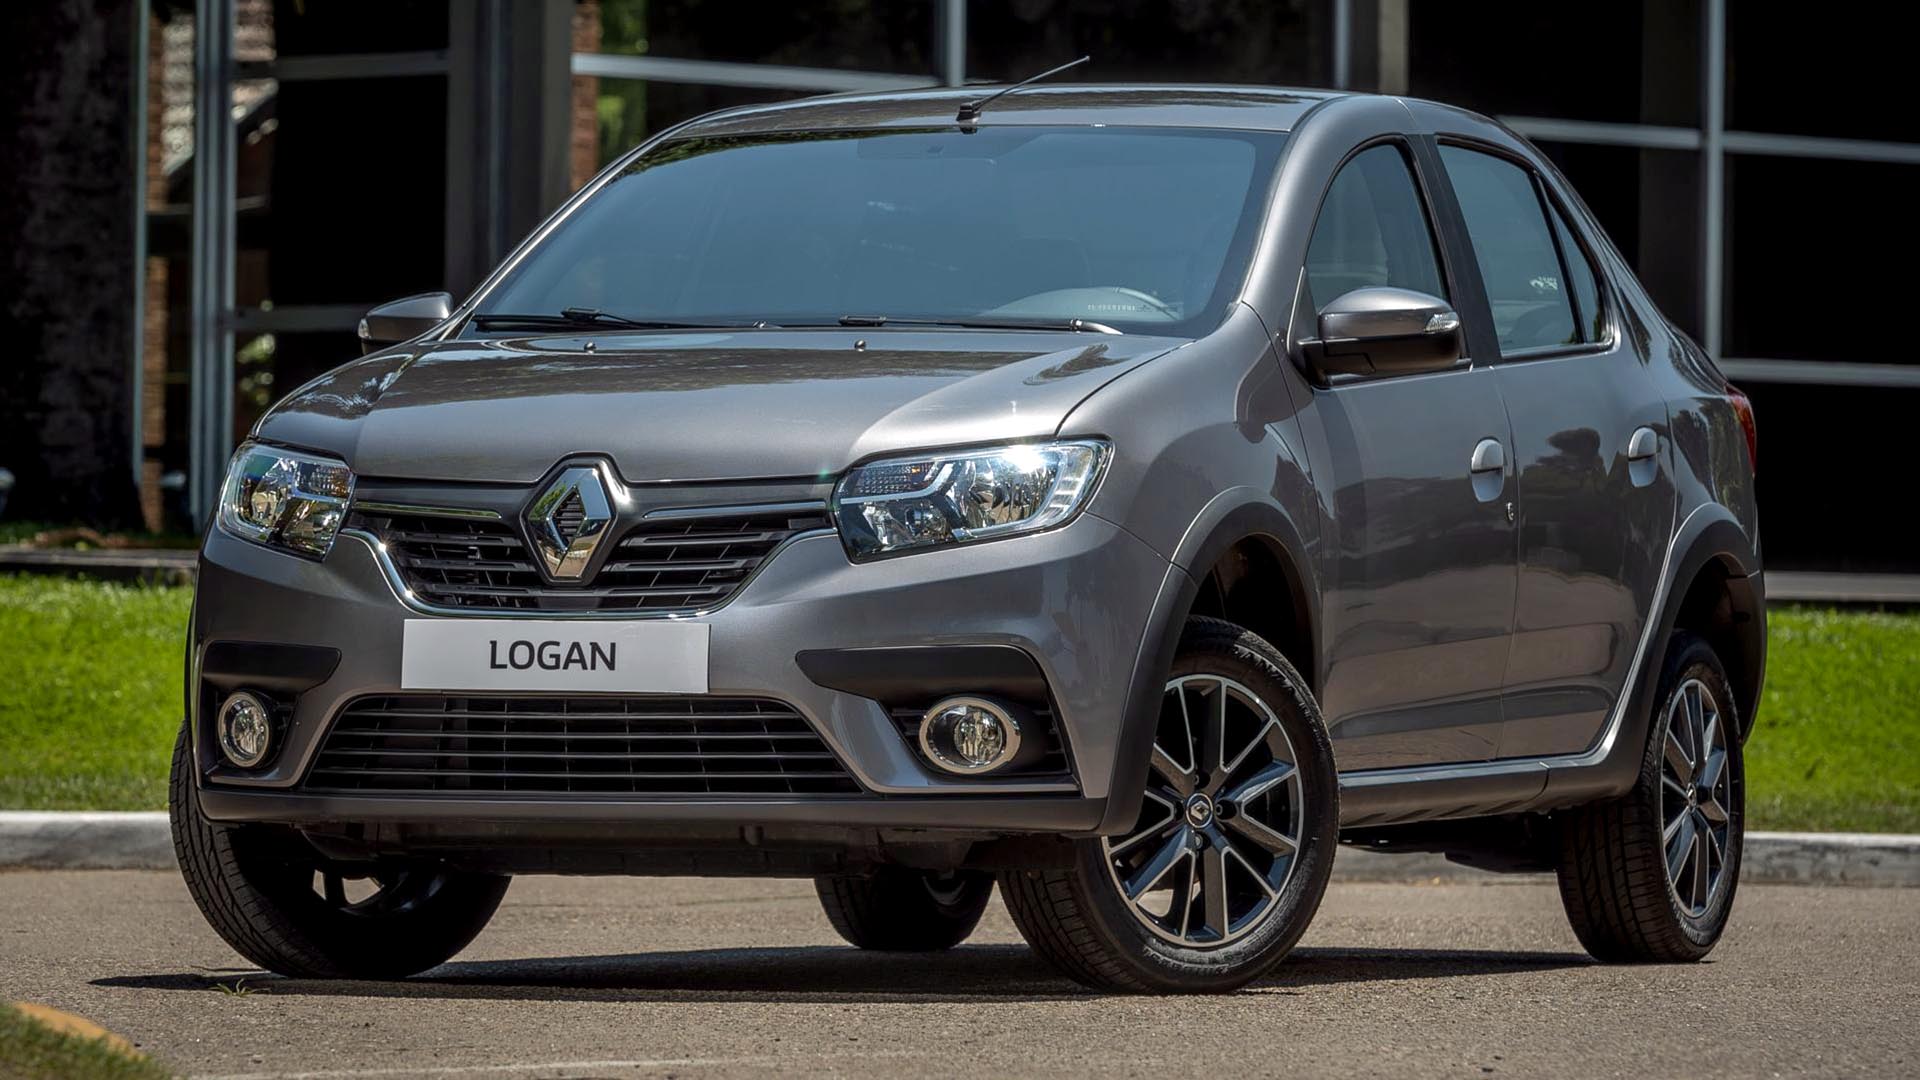 El Renault Logan tuvo un gran crecimiento de ventas en marzo, posibilitando a la marca a subir al tercer lugar entre las marcas